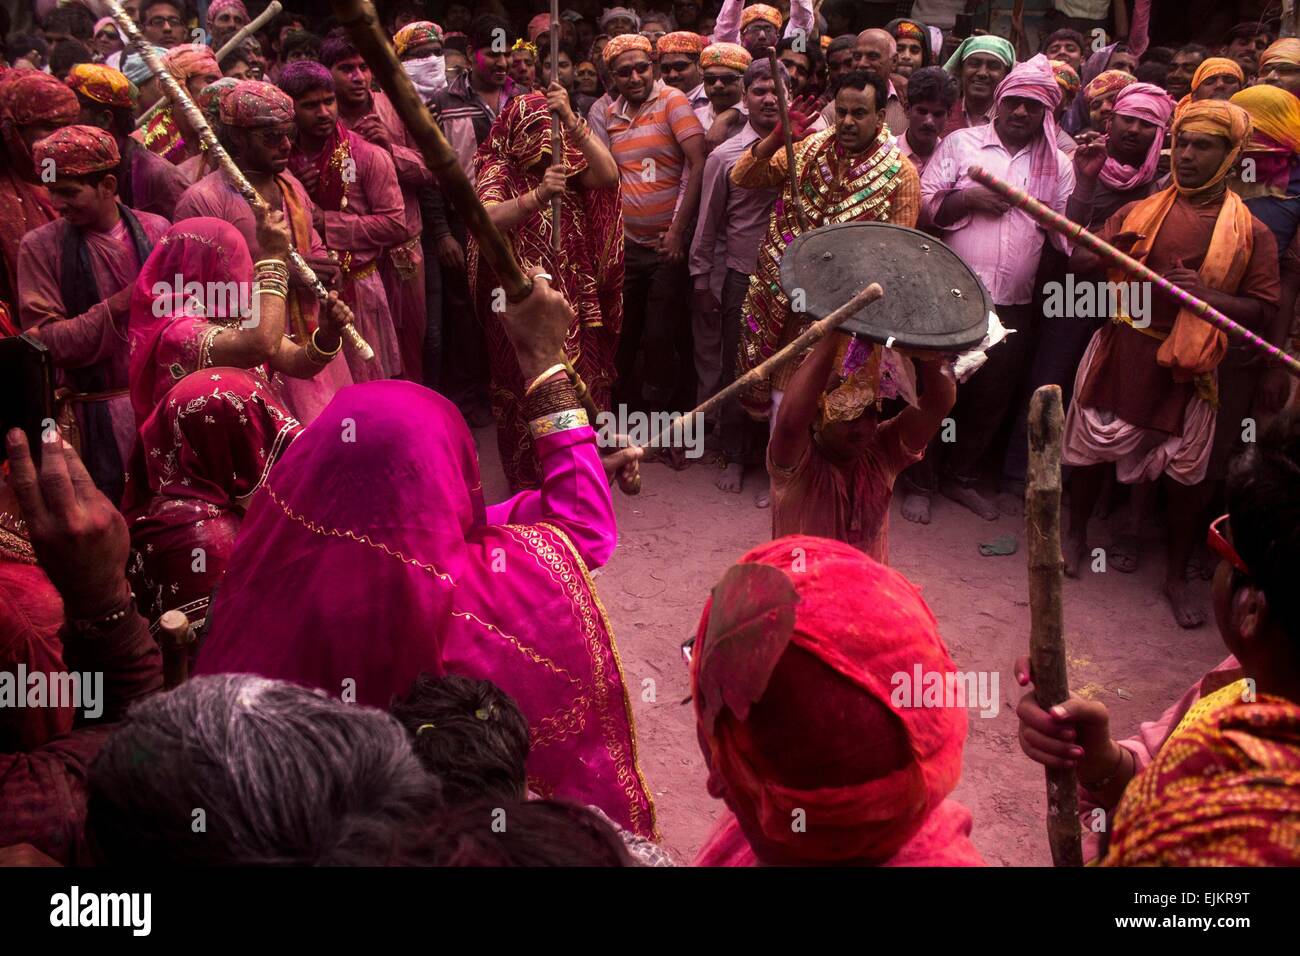 Popolo Indiano celebrare Lathmar Holi erano il bastone è nelle mani delle donne in questo giorno e gli uomini hanno bisogno di un sacco di lavoro per salvare se stessi dal immensamente caricato womenfolk. Foto Stock